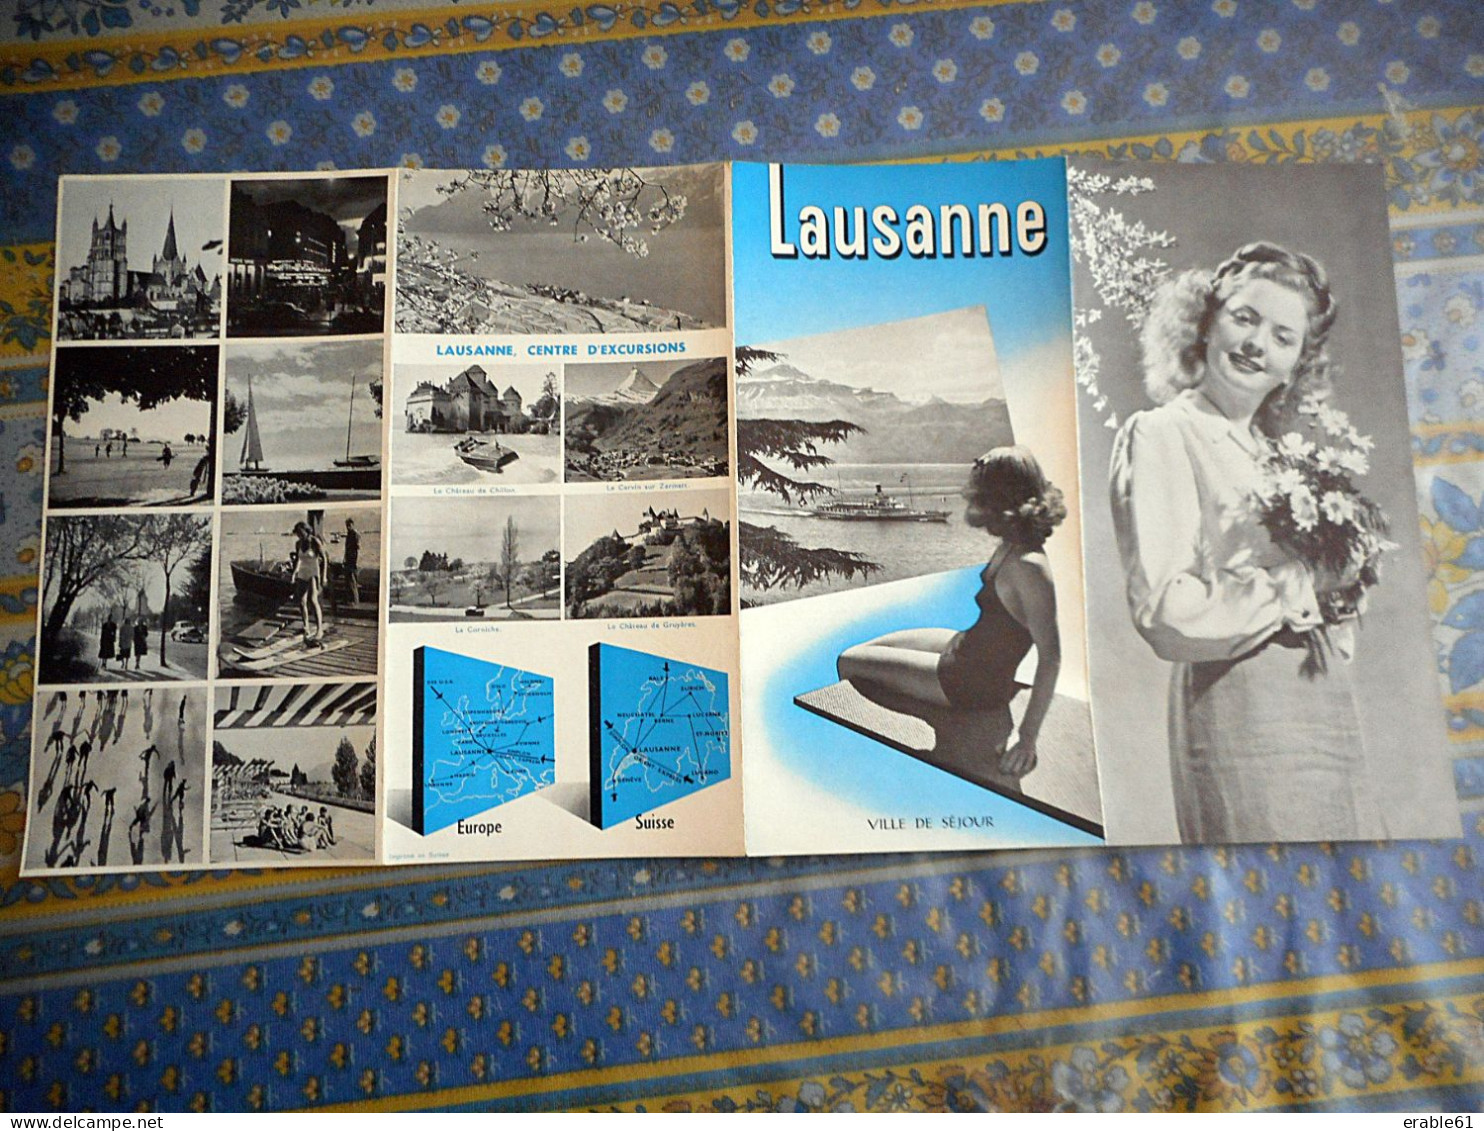 DEPLIANT TOURISTIQUE LAUSANNE SUISSE 1949 - Reiseprospekte